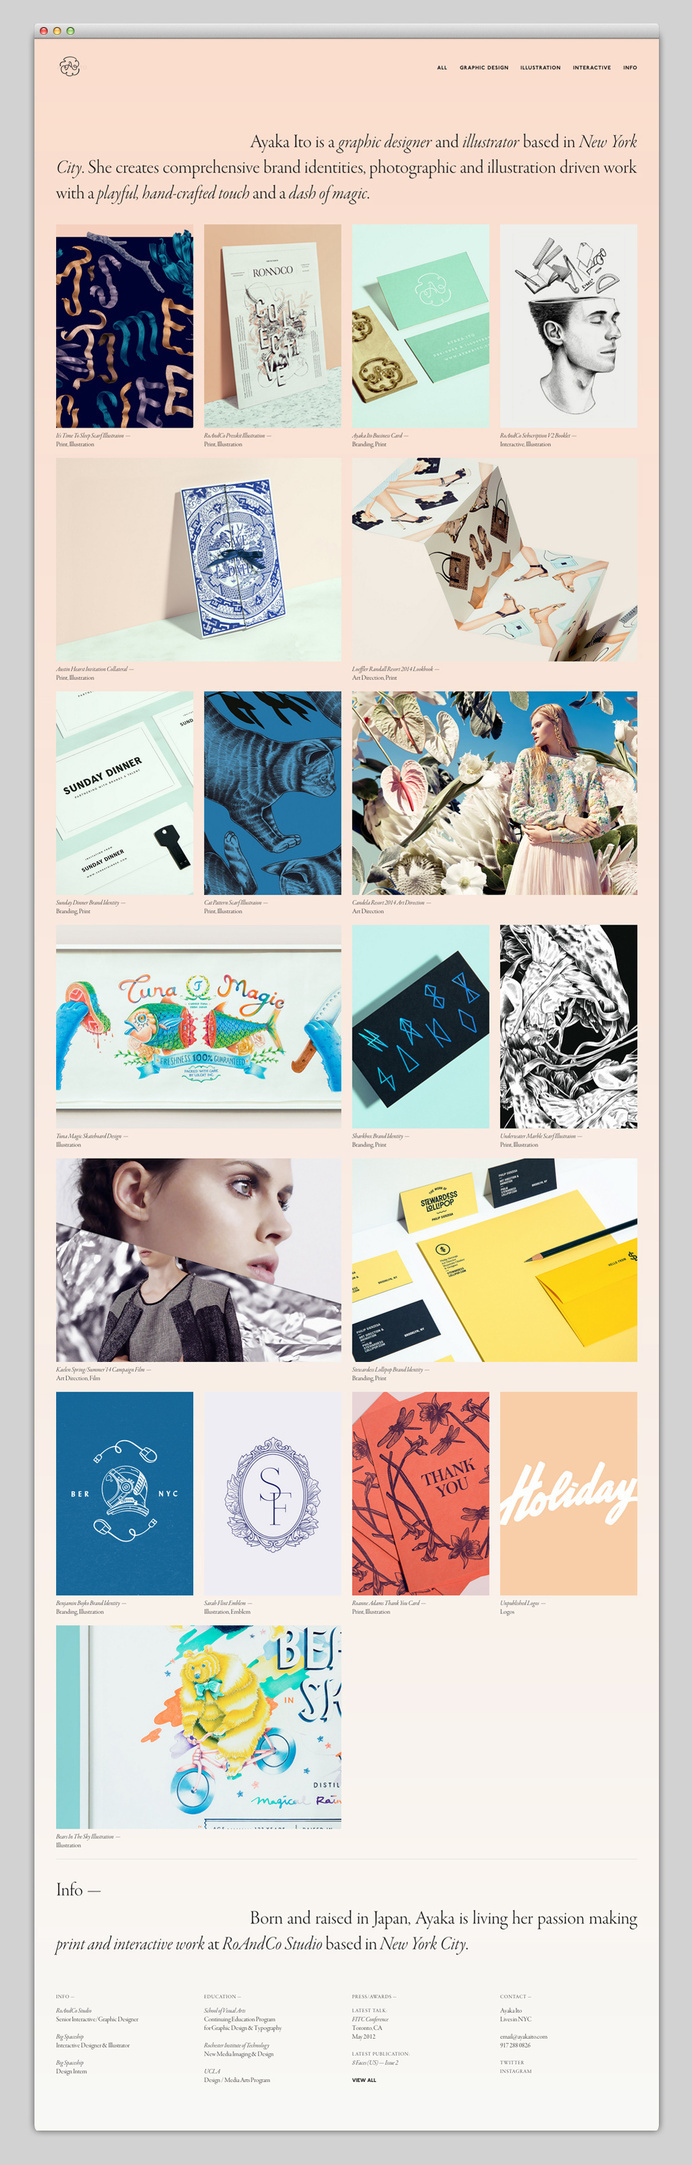 Situs Web yang Kami Cintai — Menampilkan Desain Web Terbaik #webdesign #web #website #ui #best #minimal #typography #design #agency #portfolio